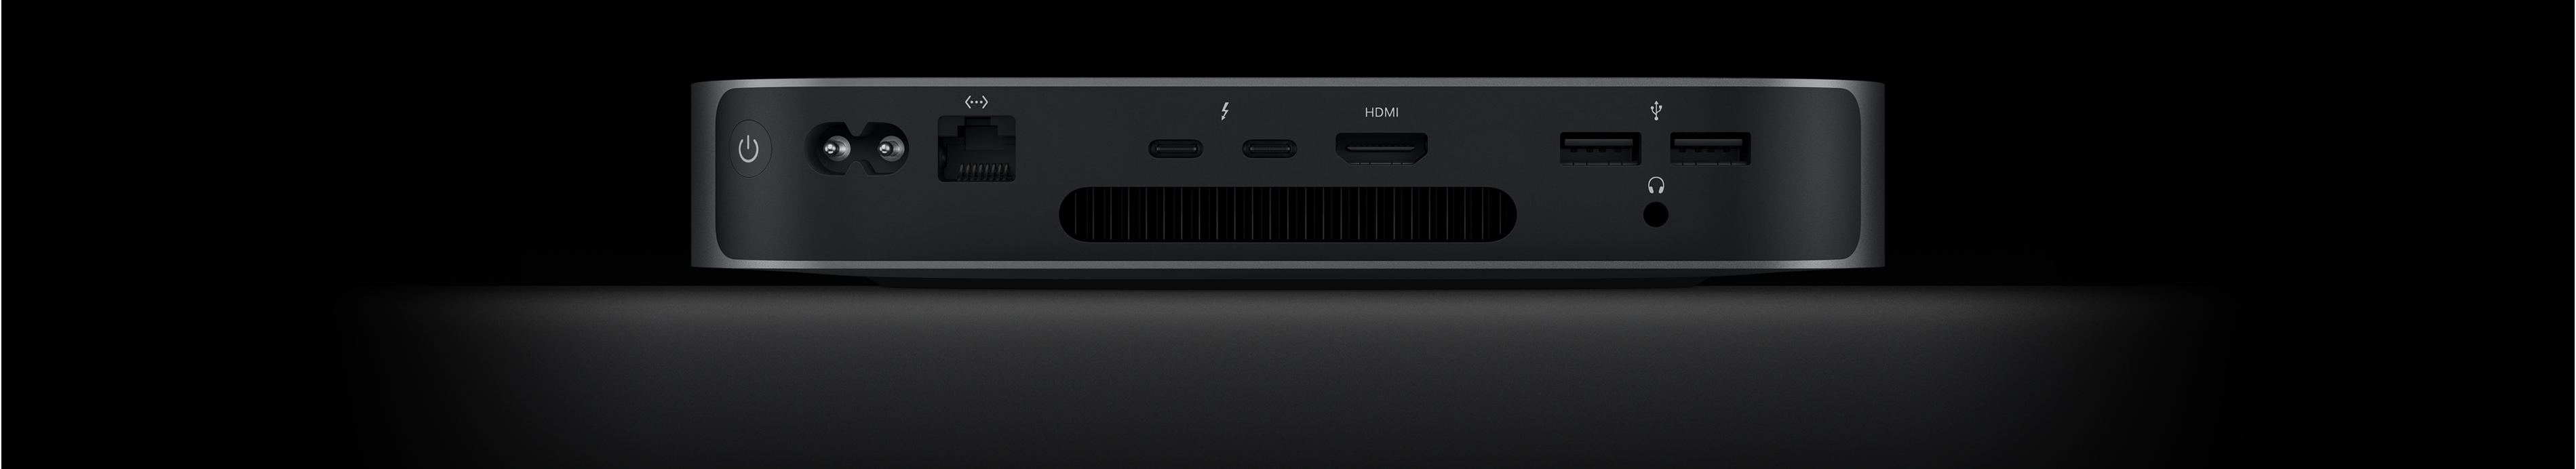 Mac mini sett fra baksiden vises med to Thunderbolt 4-porter, HDMI-port, to USB-A-porter, hodetelefonutgang, Gigabit Ethernet-port, strøminntak og av/på-knapp.